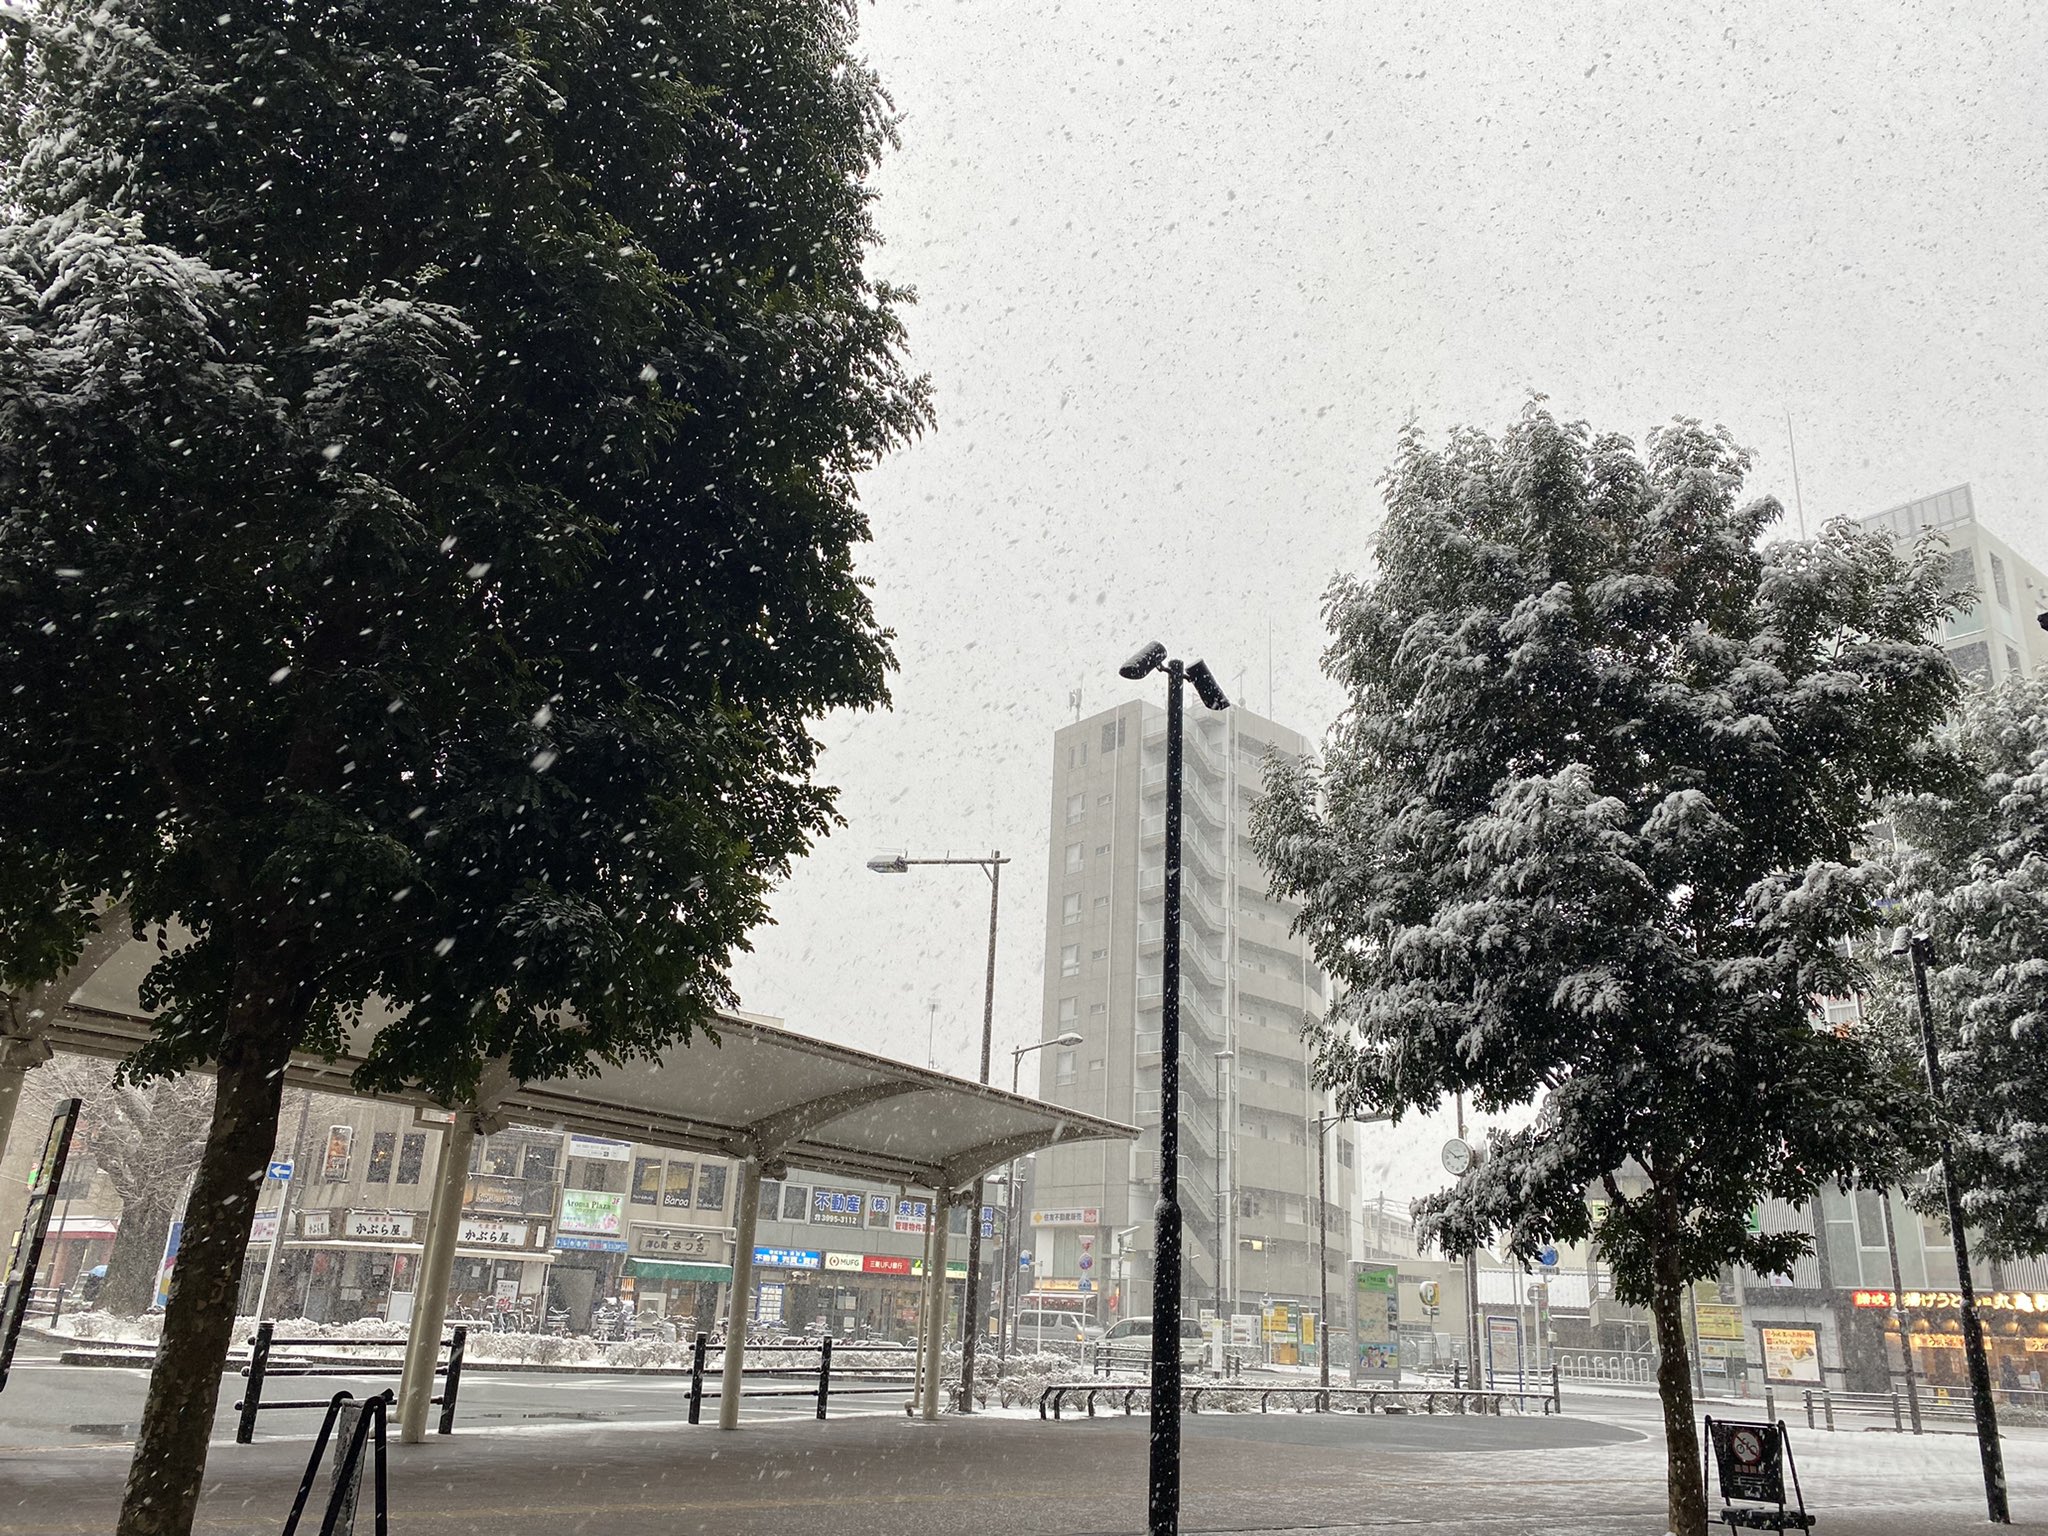 ねりま観光センター 雪の日 その2 16時の石神井公園駅前です かなり積もってきました 練馬区 石神井公園 積雪 T Co Eyindrtbzl Twitter